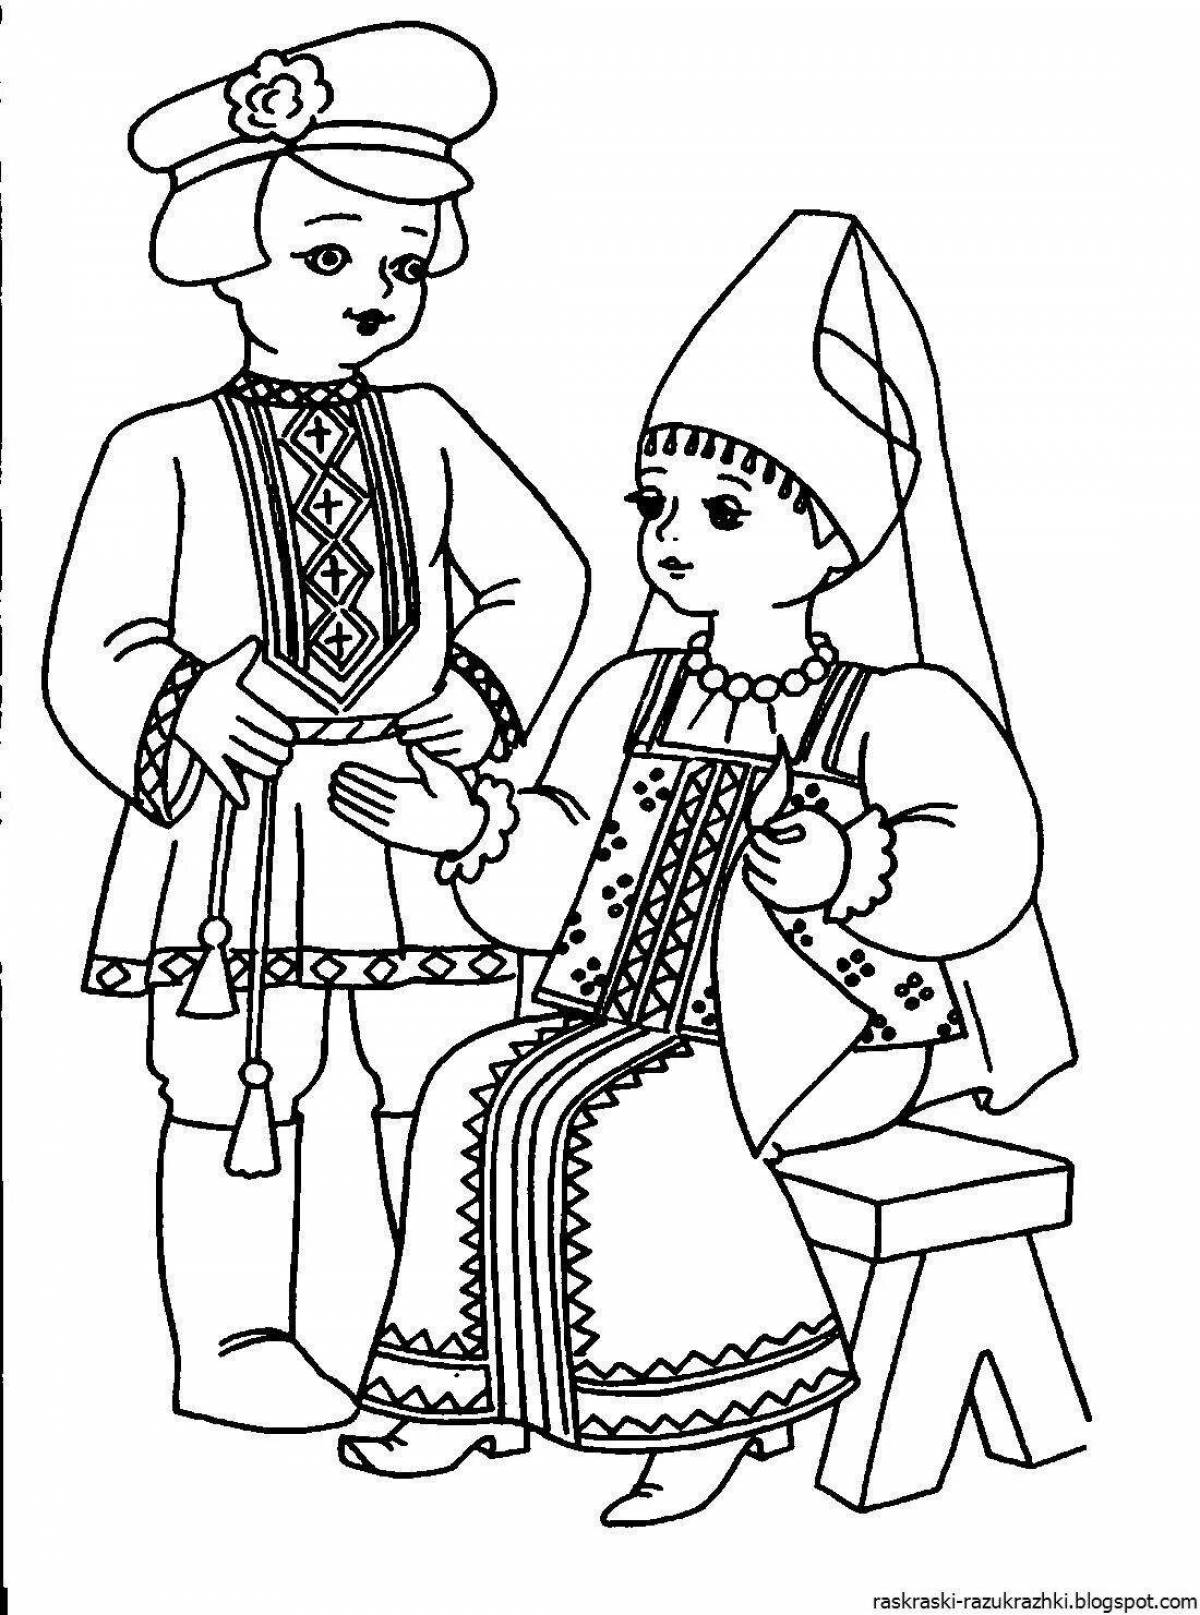 Рисунок на тему национальный костюм россии